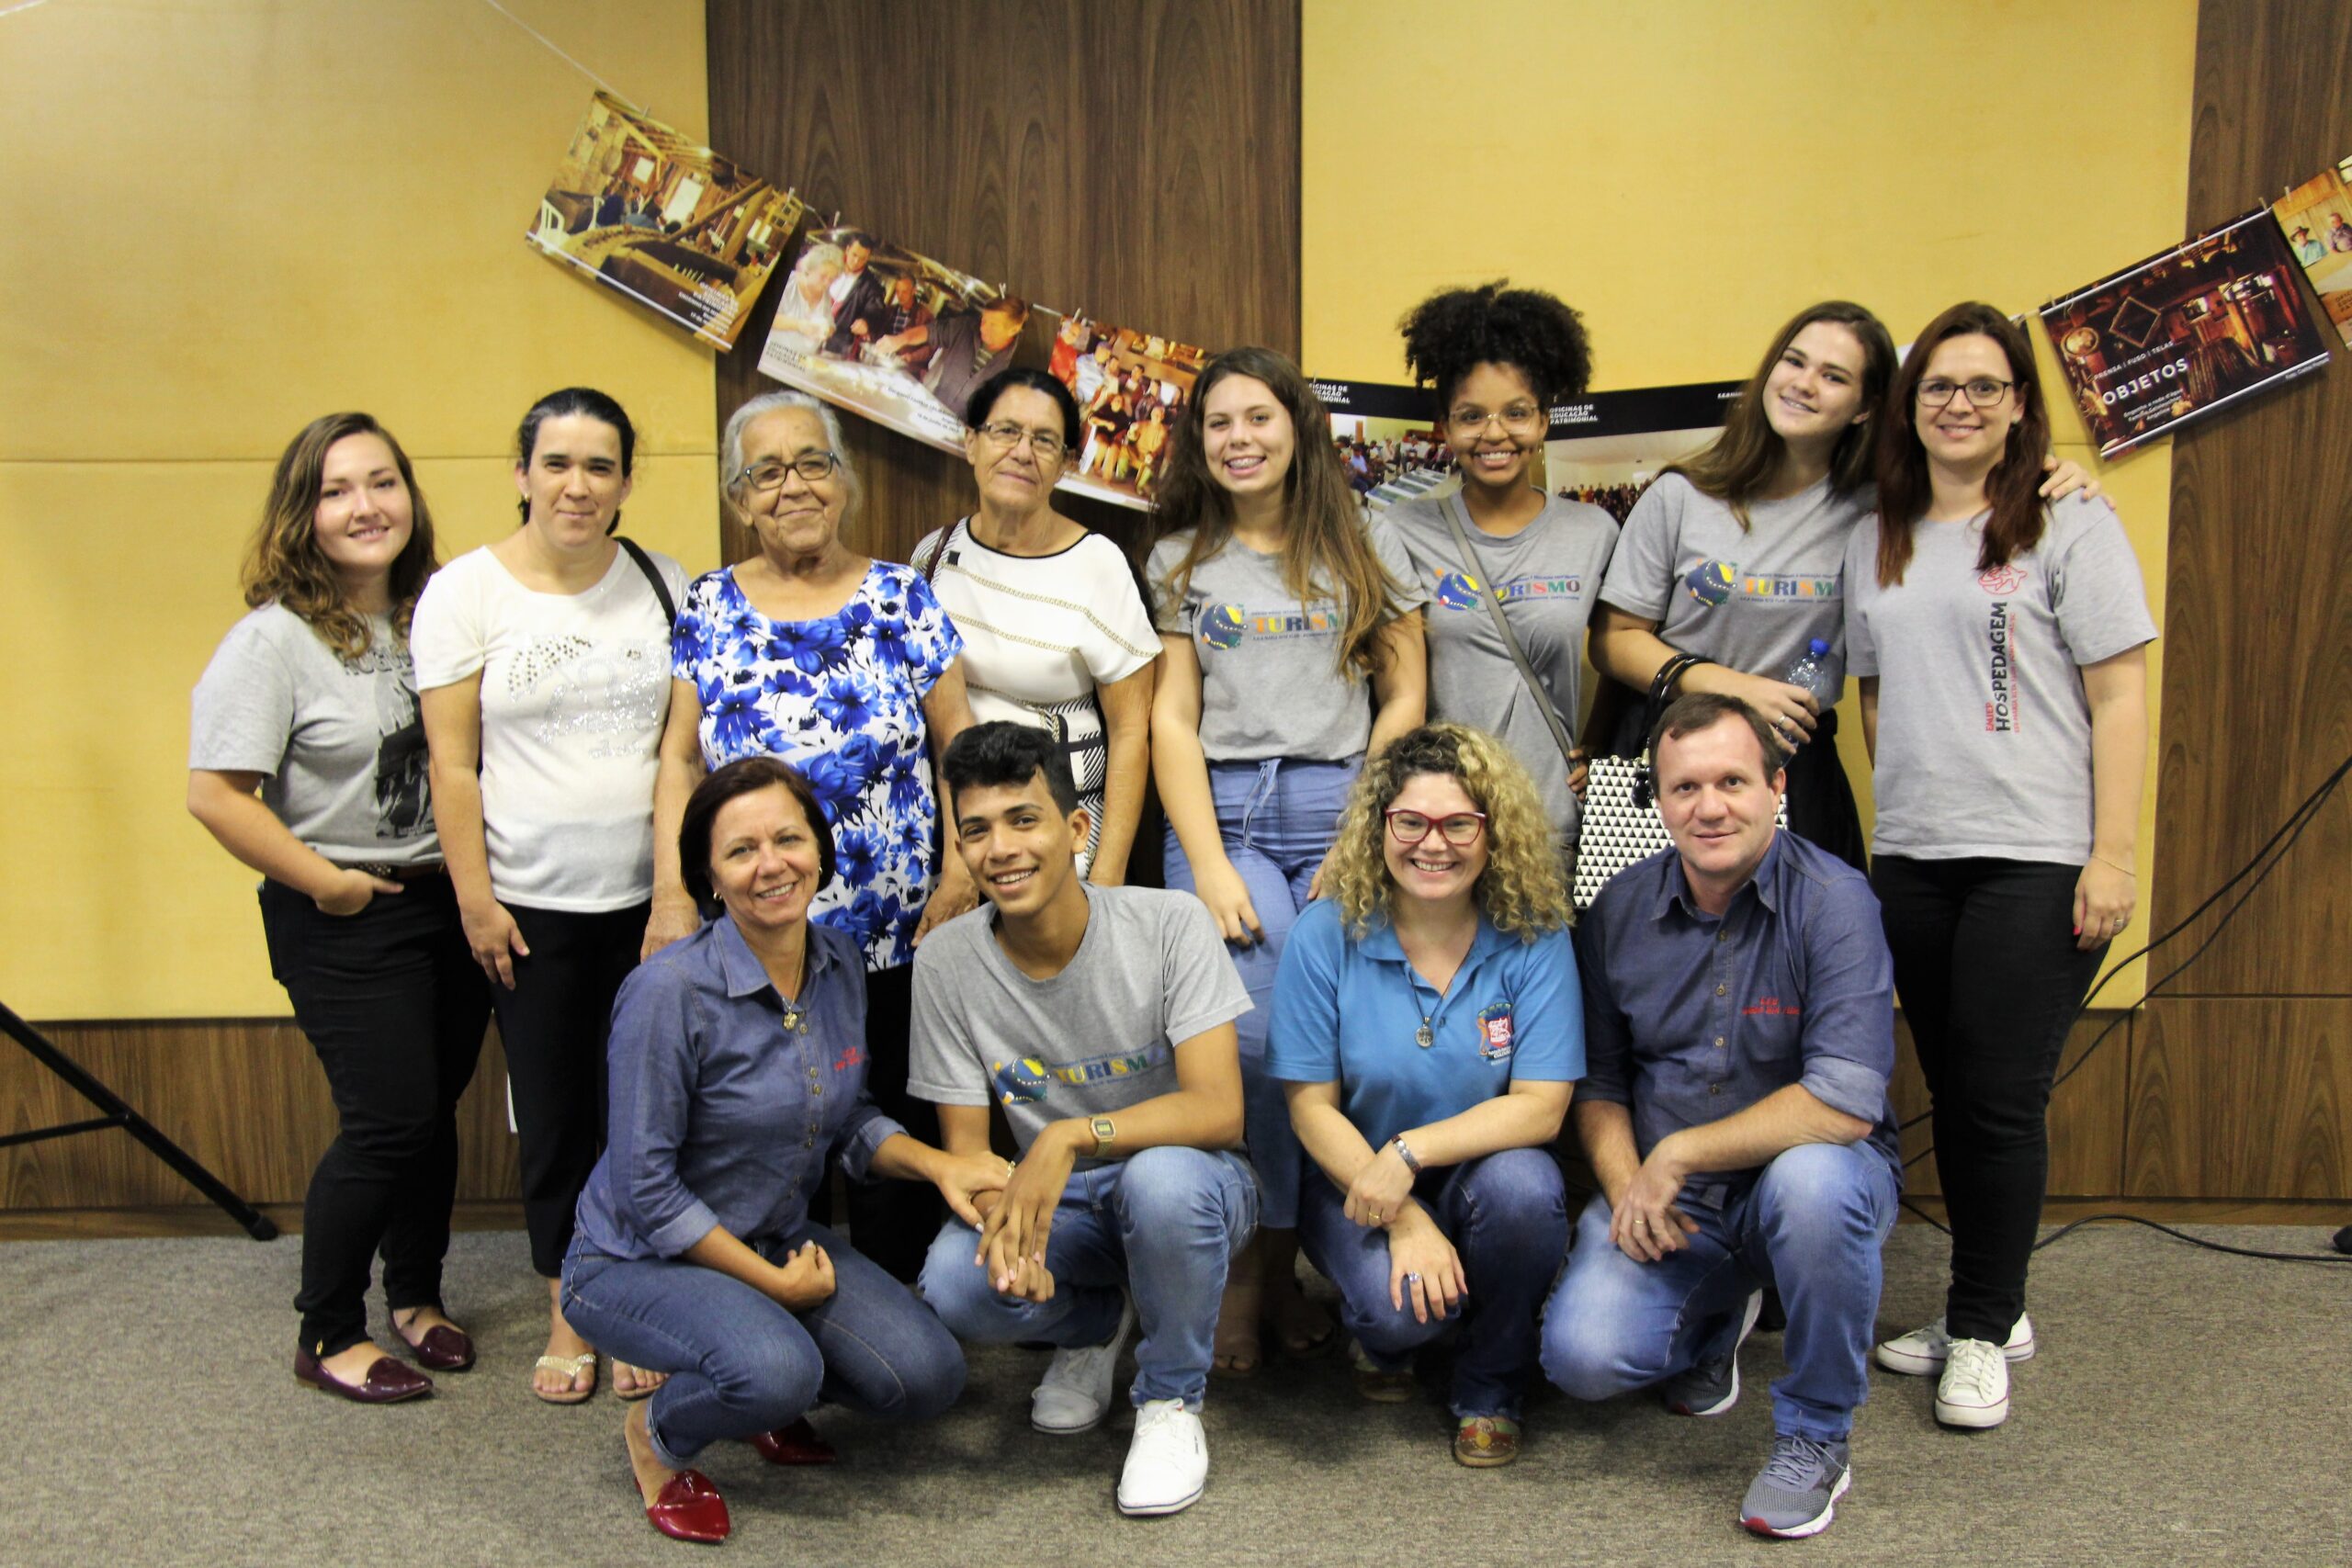 Evento realizado em Florianópolis reúne pesquisadores, donos de engenhos, forneiros e instituições culturais para debater o patrimônio cultural acerca dos engenhos.